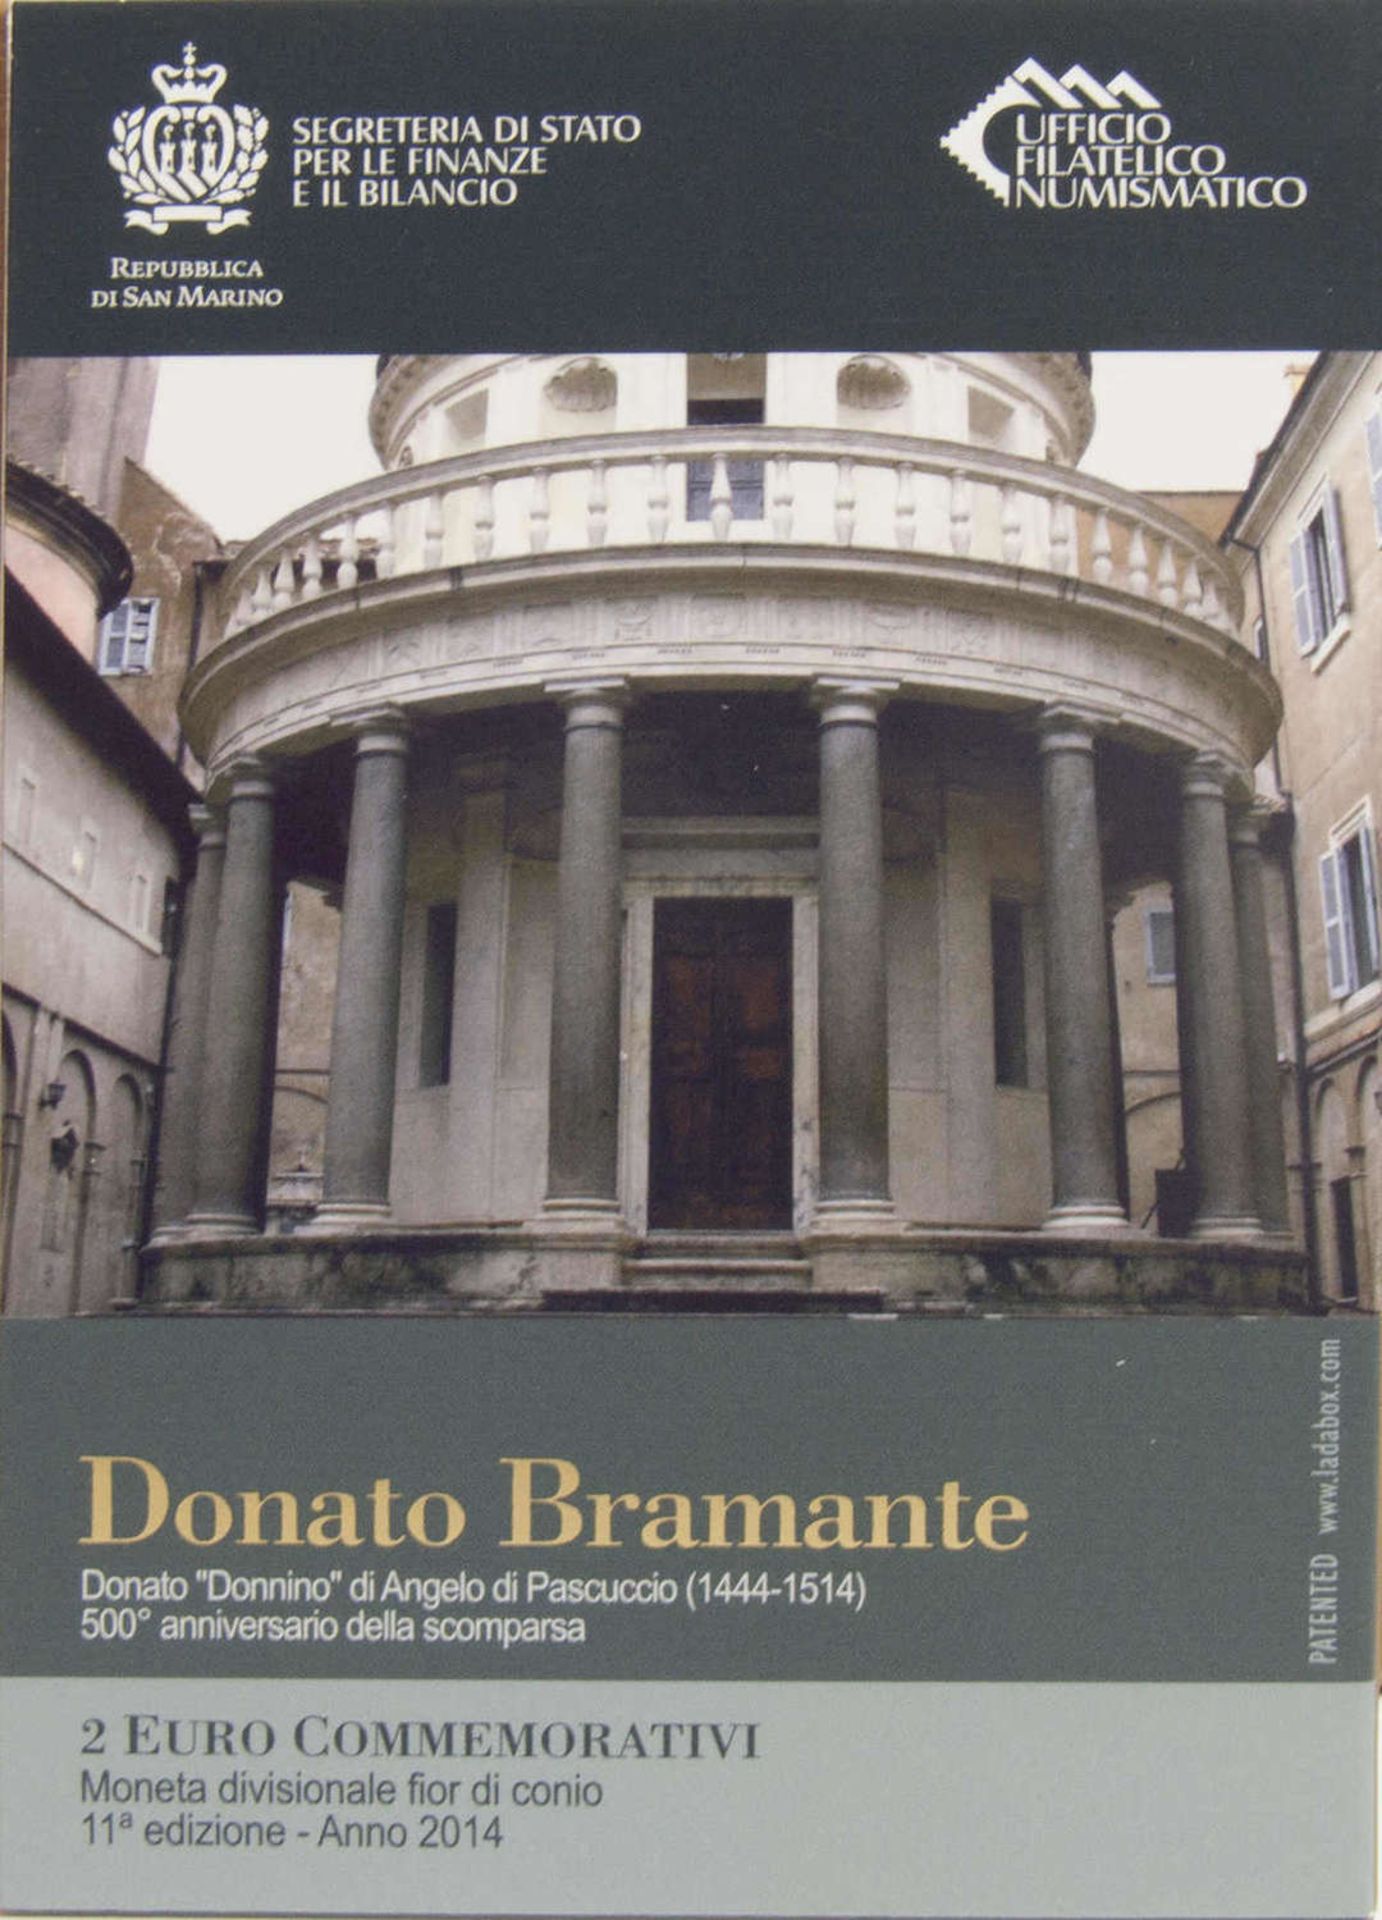 San Marino 2014, 2.- Euro - Gedenkmünze "500. Todestag von Donato Bramante". In Original - Folder. - Bild 2 aus 2